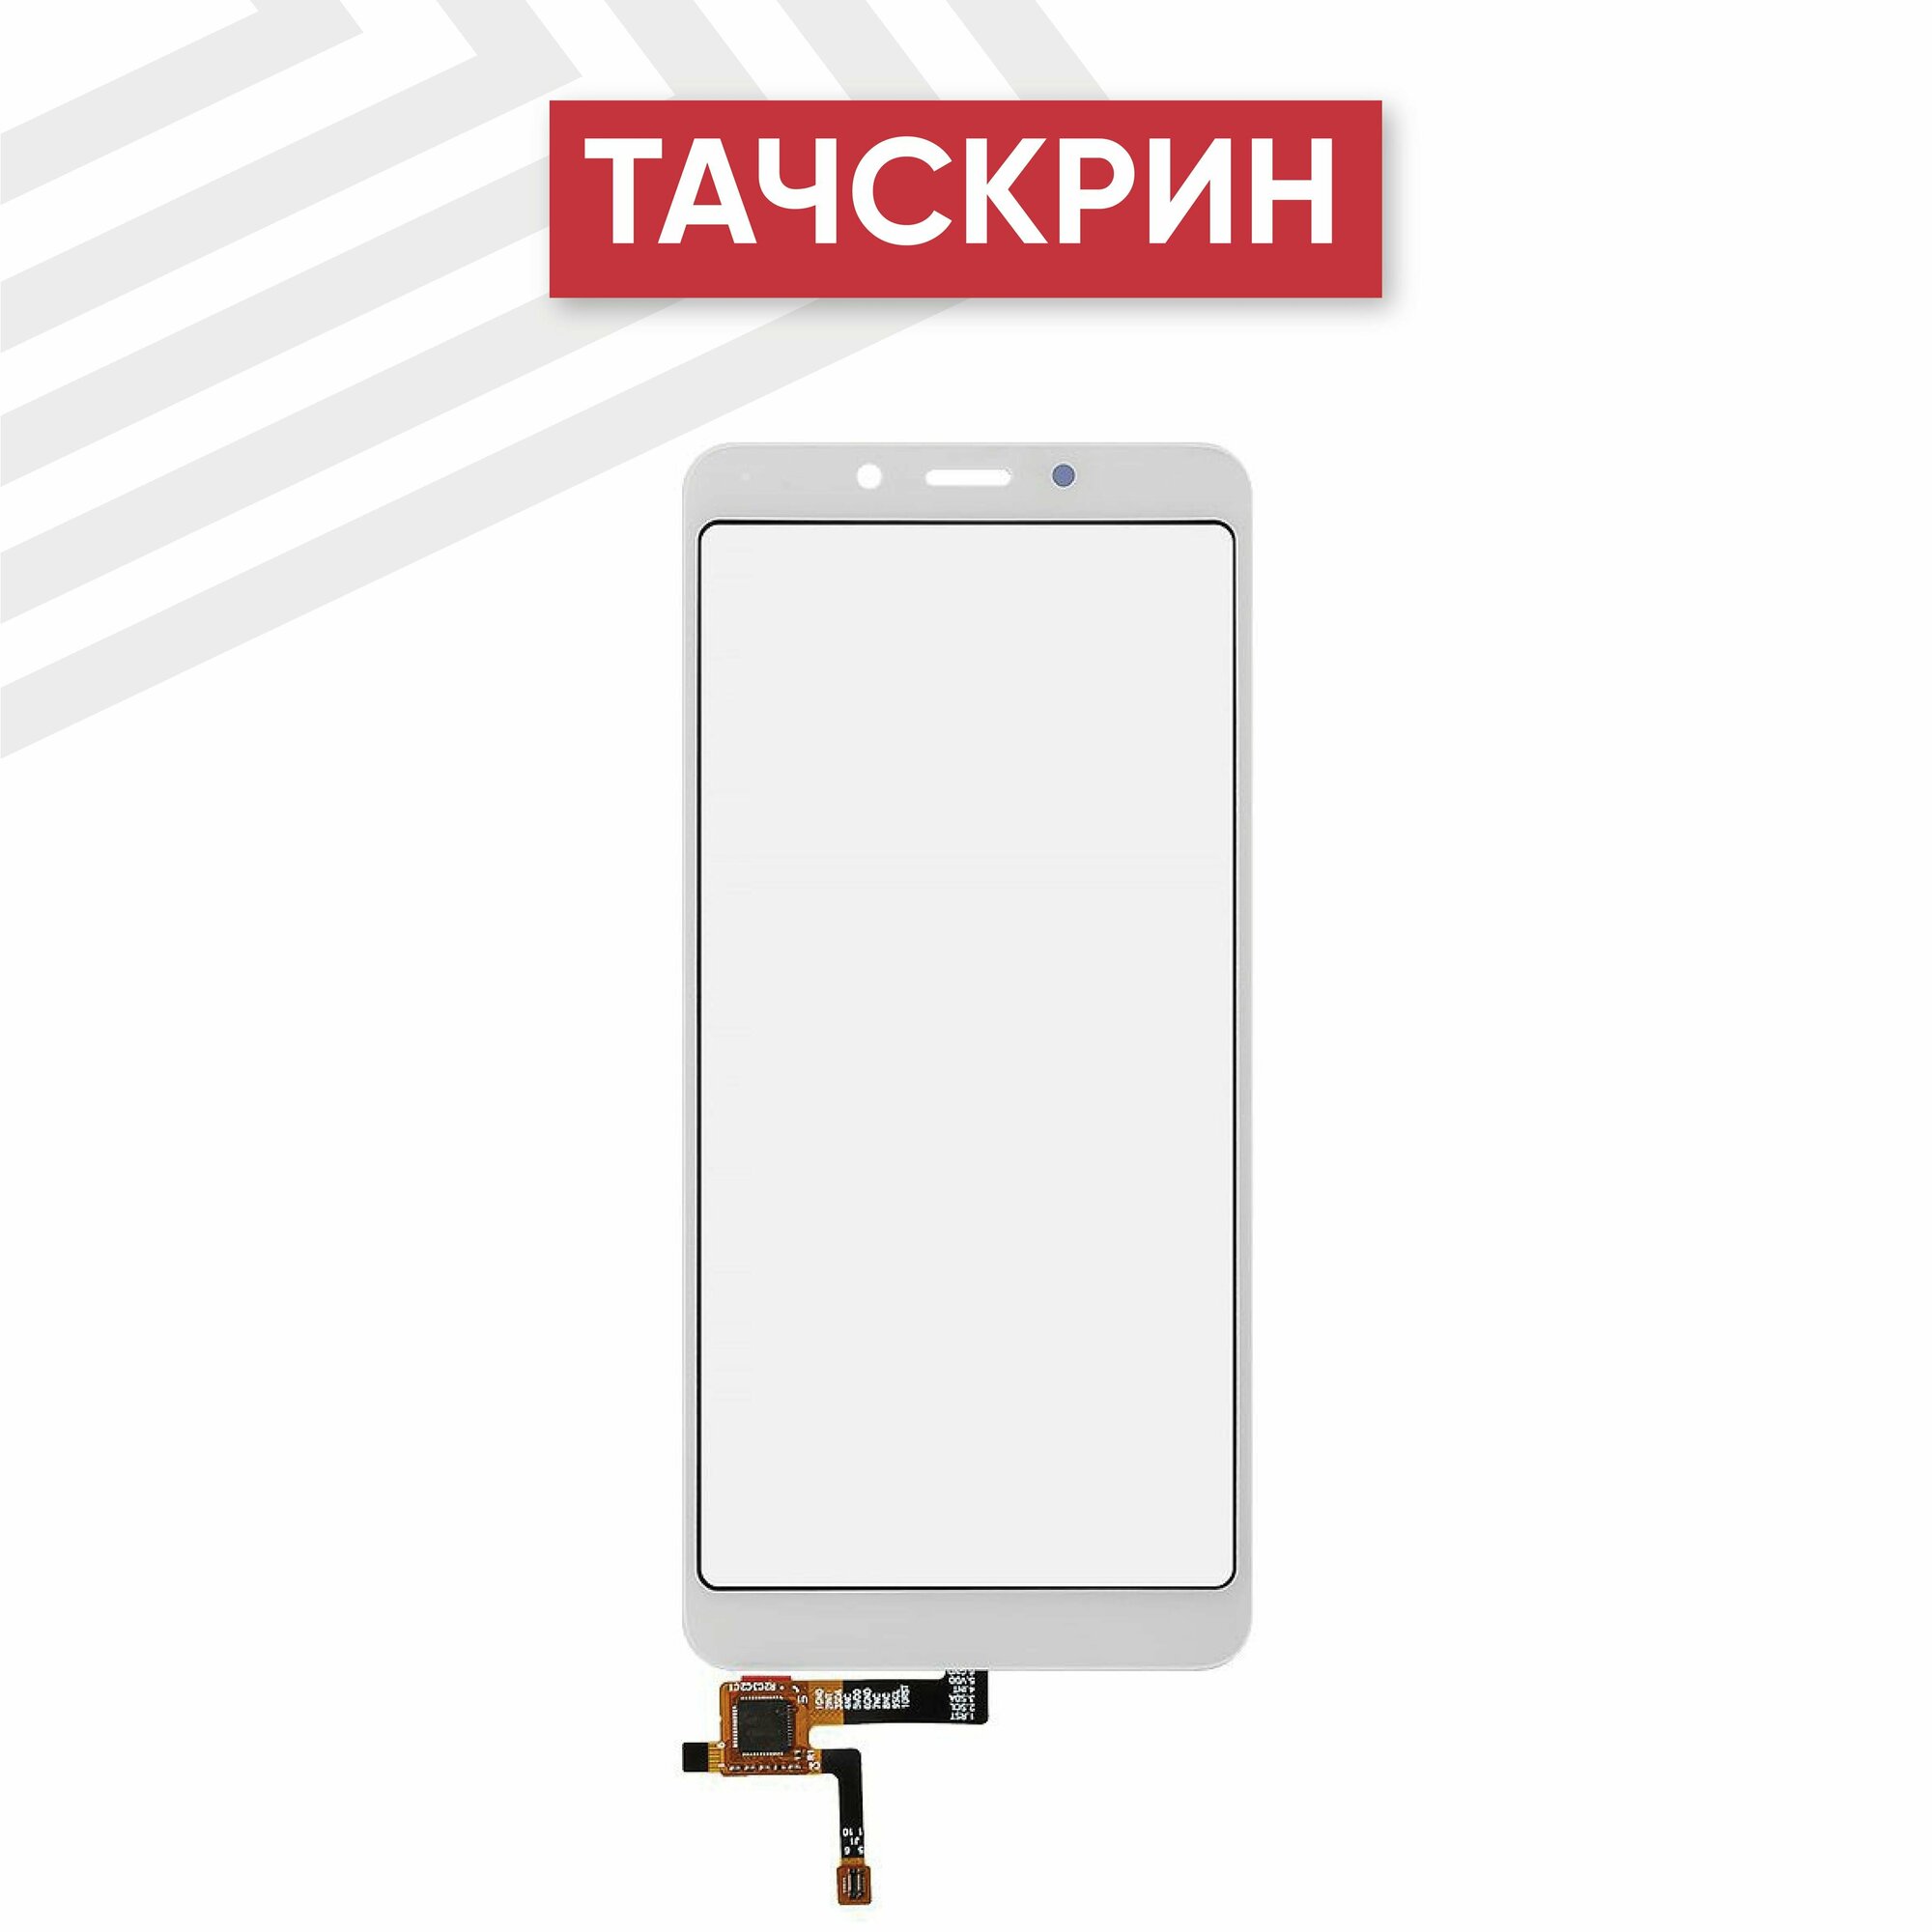 Сенсорное стекло (тачскрин) для мобильного телефона (смартфона) Xiaomi Redmi 6, Redmi 6A, белое